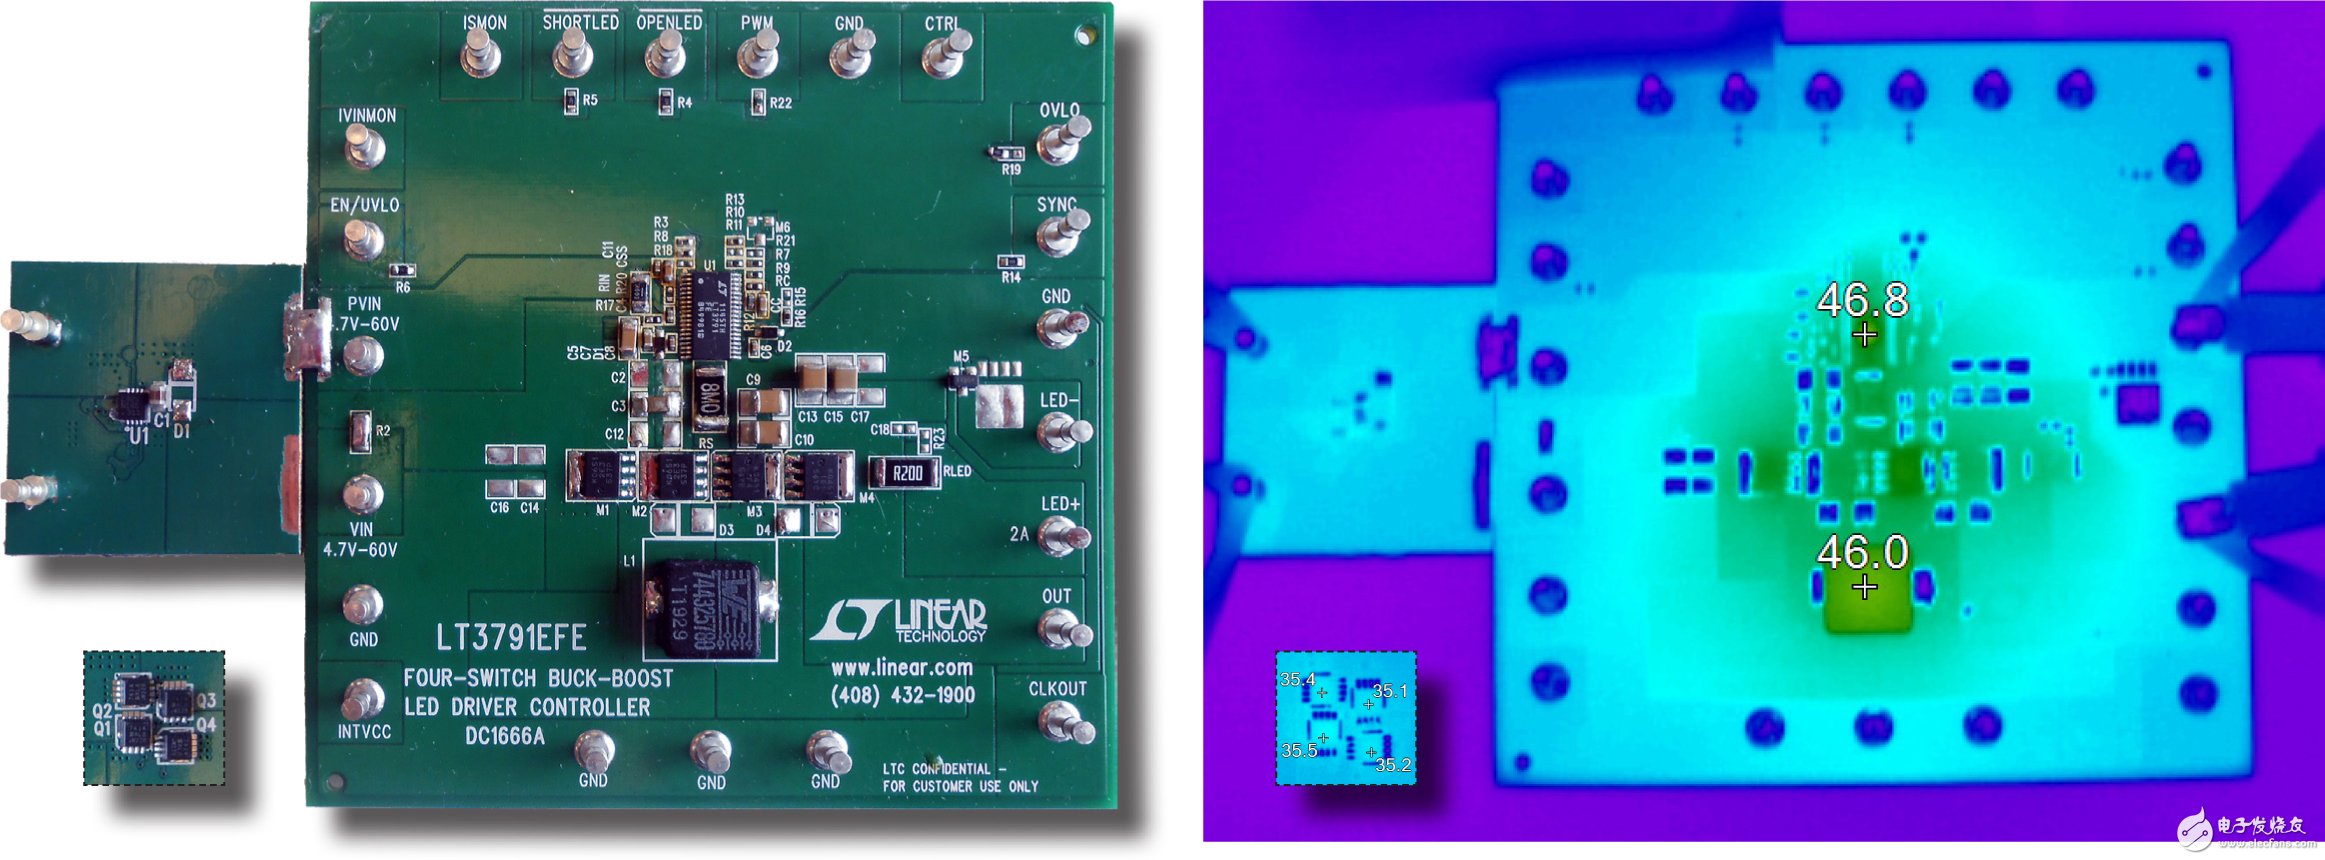 图 5：在图 1 所示的高效率 LED 驱动器中组件保持低温状态。请注意，LT4320 理想驱动器可在满 LED 电流条件下处于低温运行状态。在提供 60W 的 LED 功率时，LT3791 高功率降压-升压型转换器和支持组件的温升小于 24°C。位于电路板背面的 4 个理想二极管桥 MOSFET （嵌入） 的温升小于 13°C （环境温度为 23°C）。